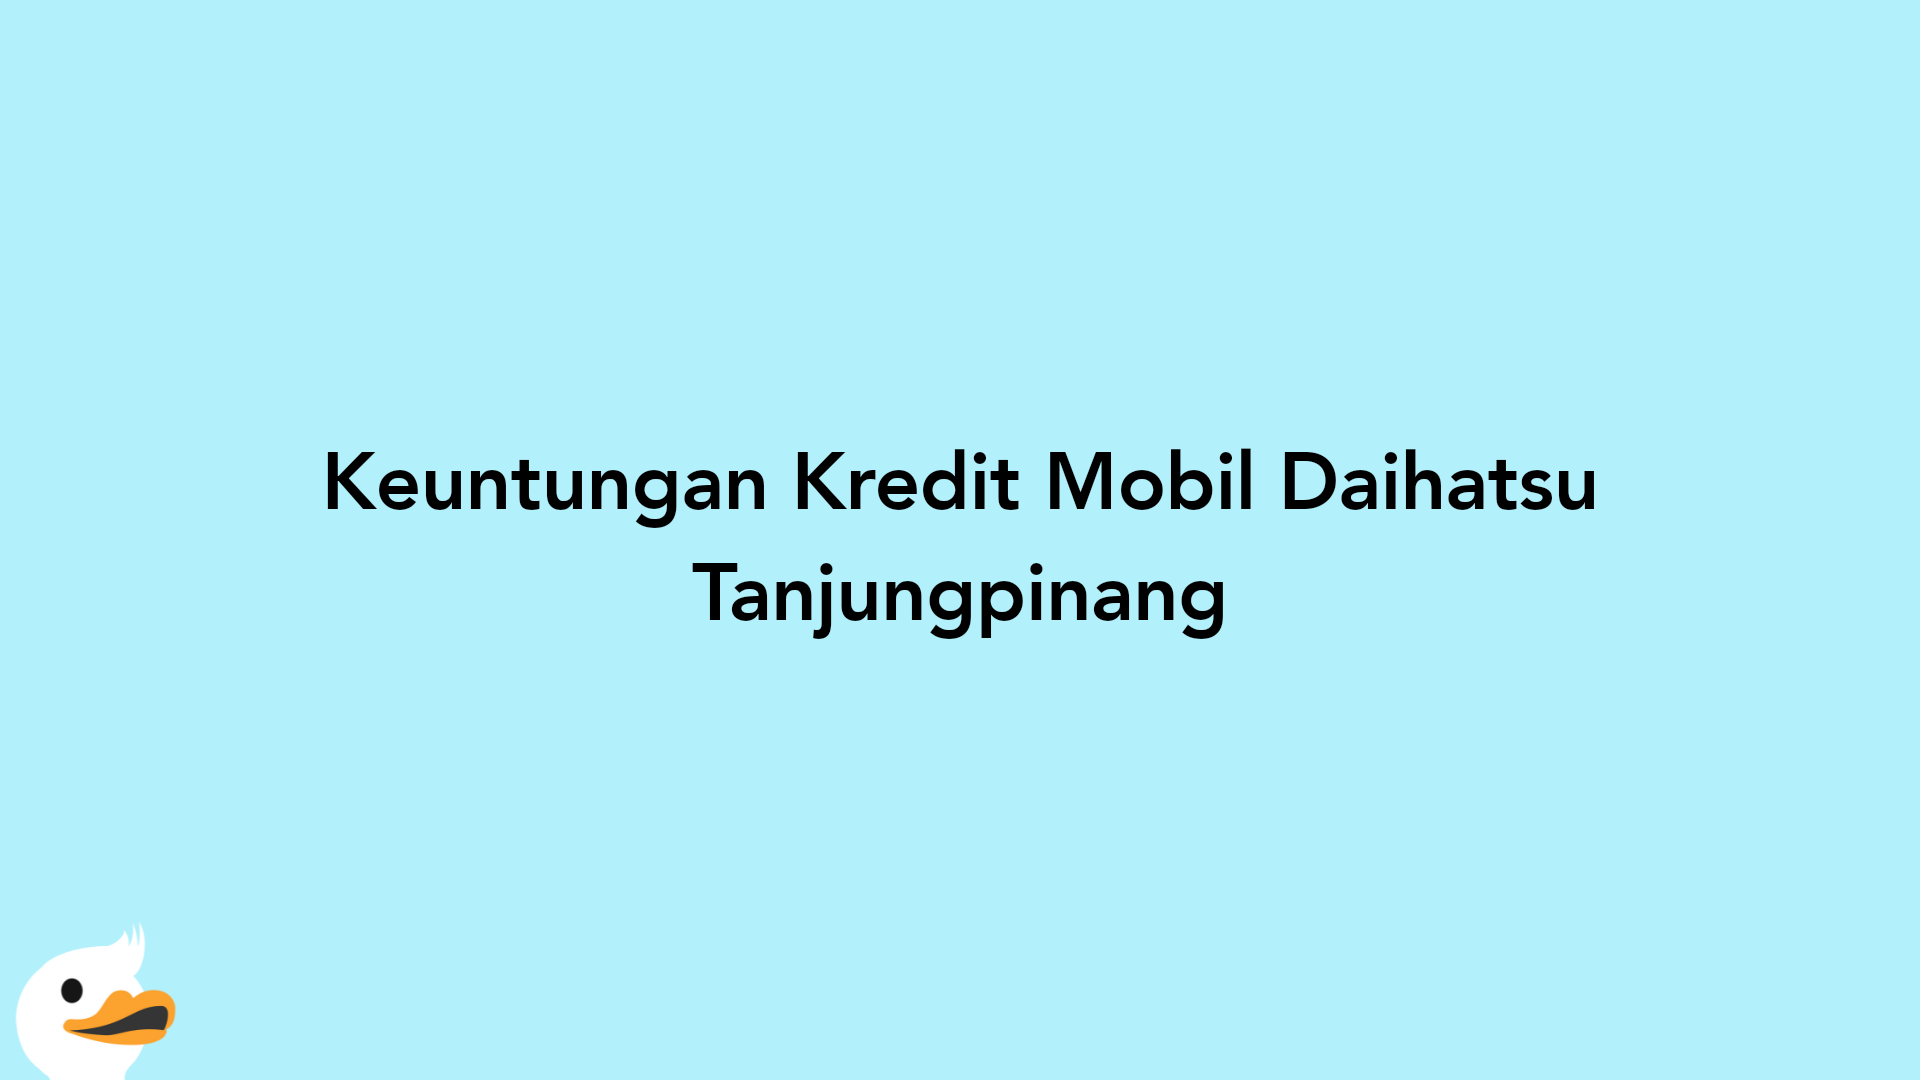 Keuntungan Kredit Mobil Daihatsu Tanjungpinang